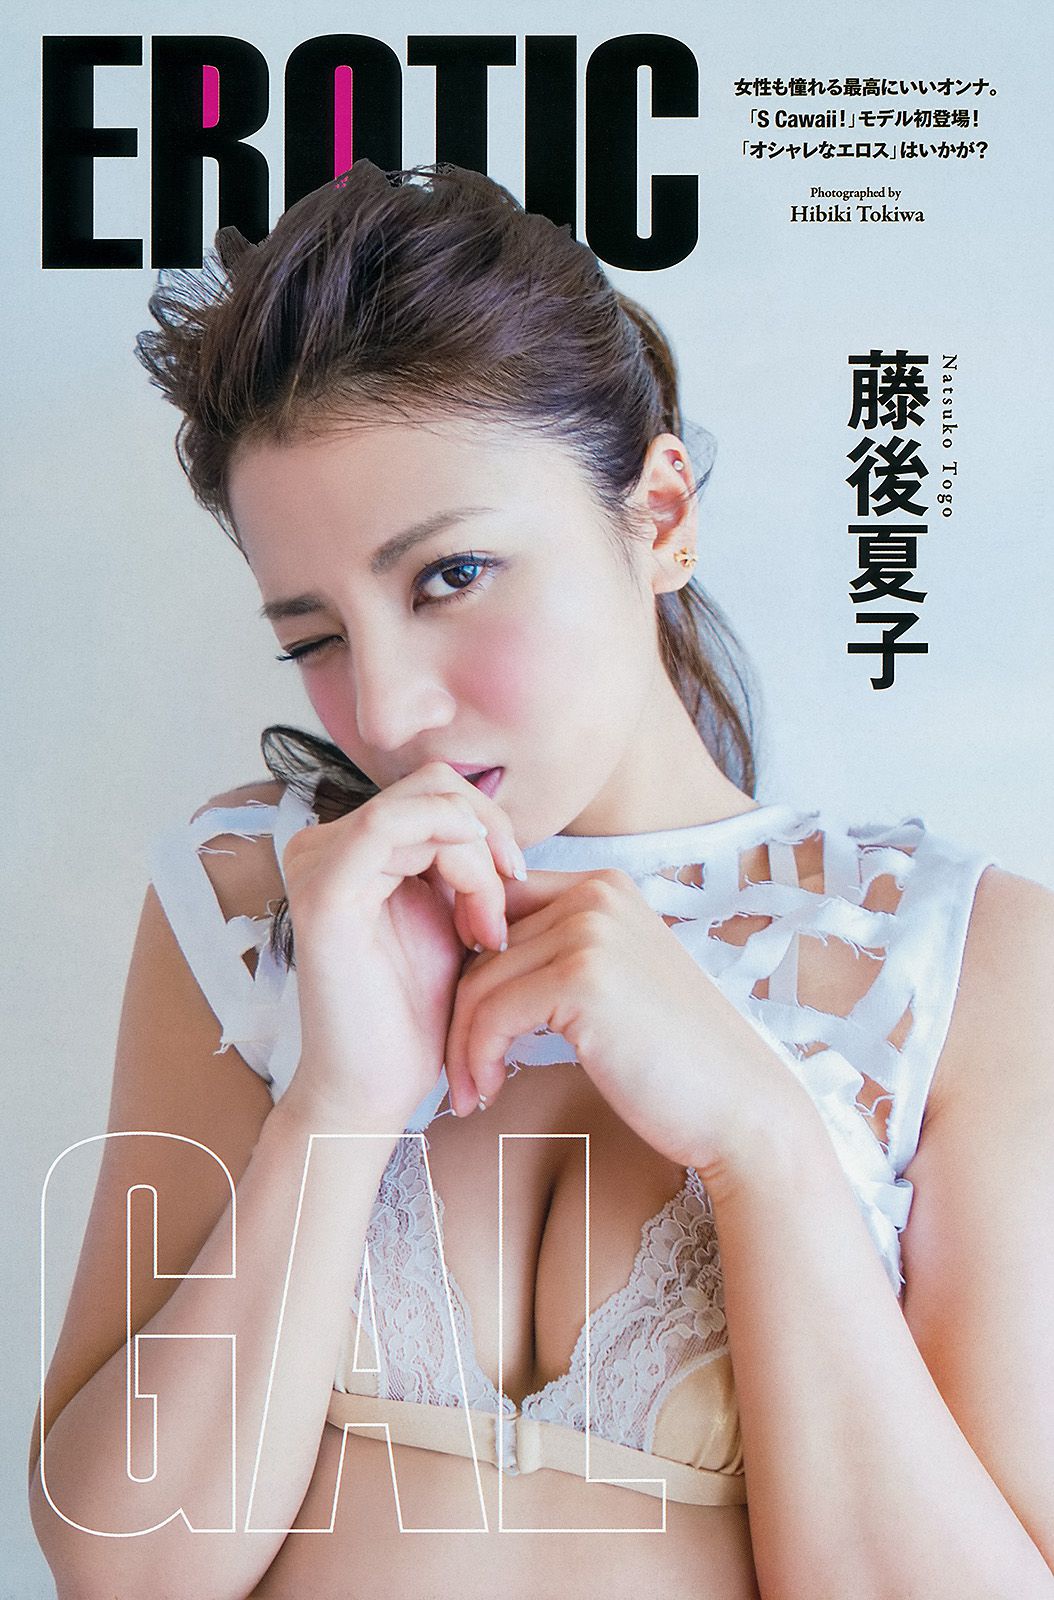 Chiaki Kyan Chiaki Fujigo [Young Animal Arashi 岚 Special Edition] No.10 2014 Photograph Page 12 No.3e3c67